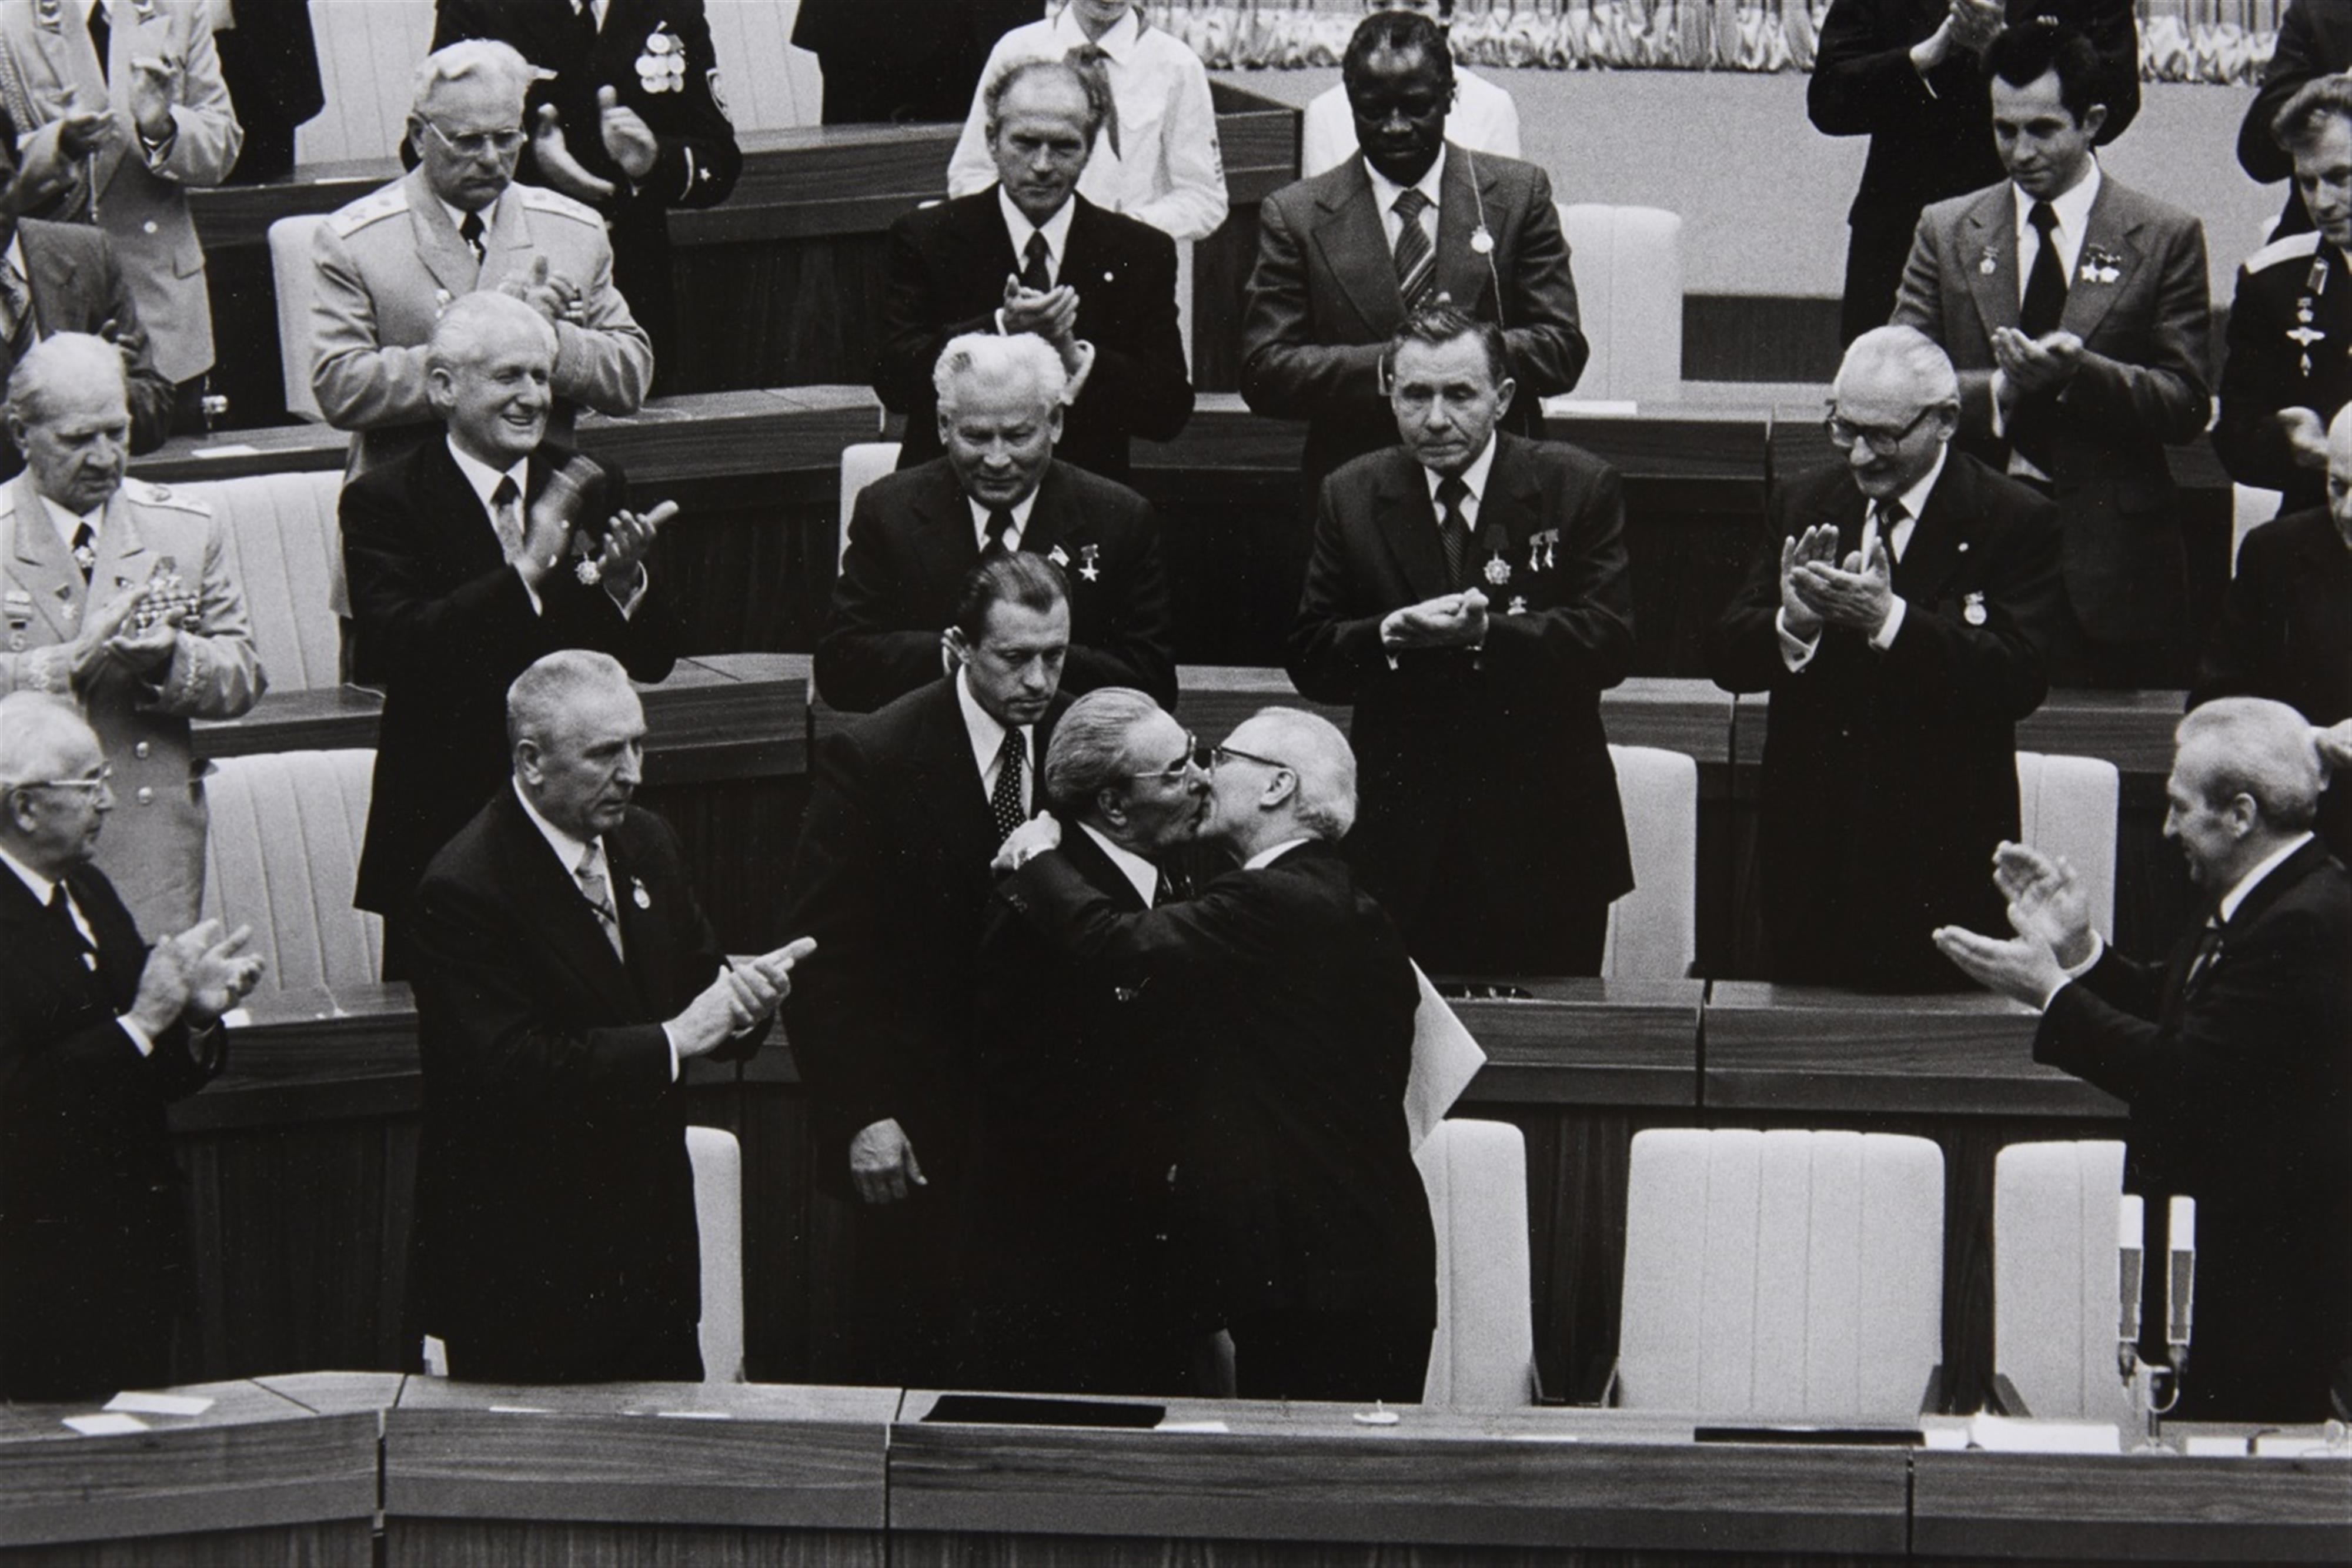 Barbara Klemm - Breschnew und Honecker am 30. Jahrestag der DDR (Breschnew and Honecker on the 30th anniversary of the GDR) - image-1